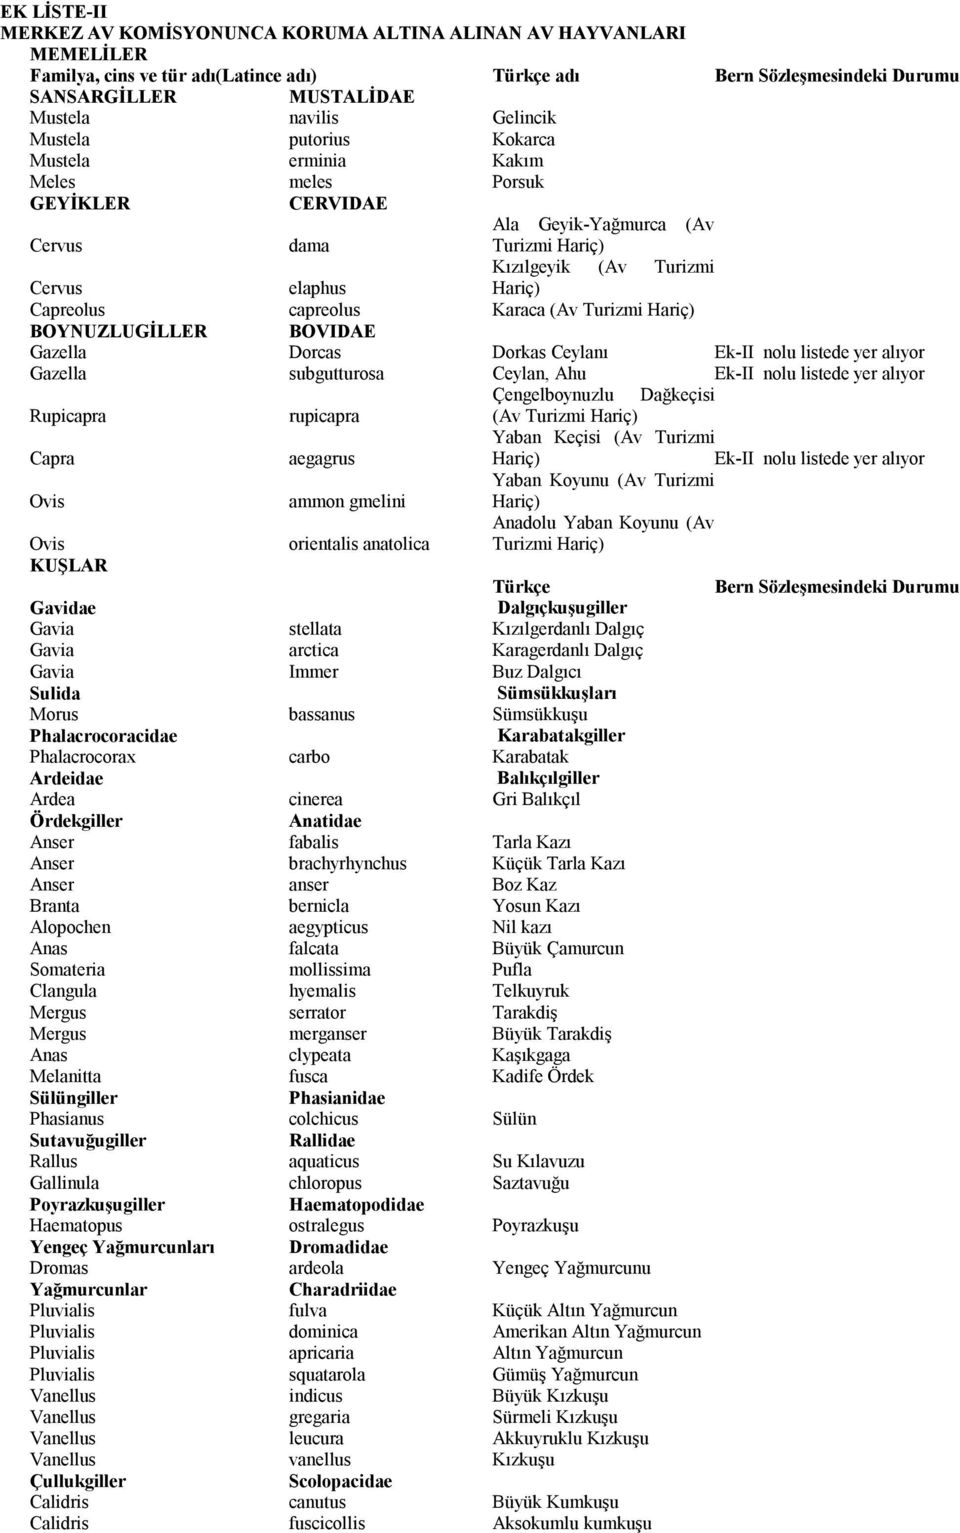 capreolus Karaca (Av Turizmi Hariç) BOYNUZLUGİLLER BOVIDAE Gazella Dorcas Dorkas Ceylanı Ek-II nolu listede yer alıyor Gazella subgutturosa Ceylan, Ahu Ek-II nolu listede yer alıyor Çengelboynuzlu